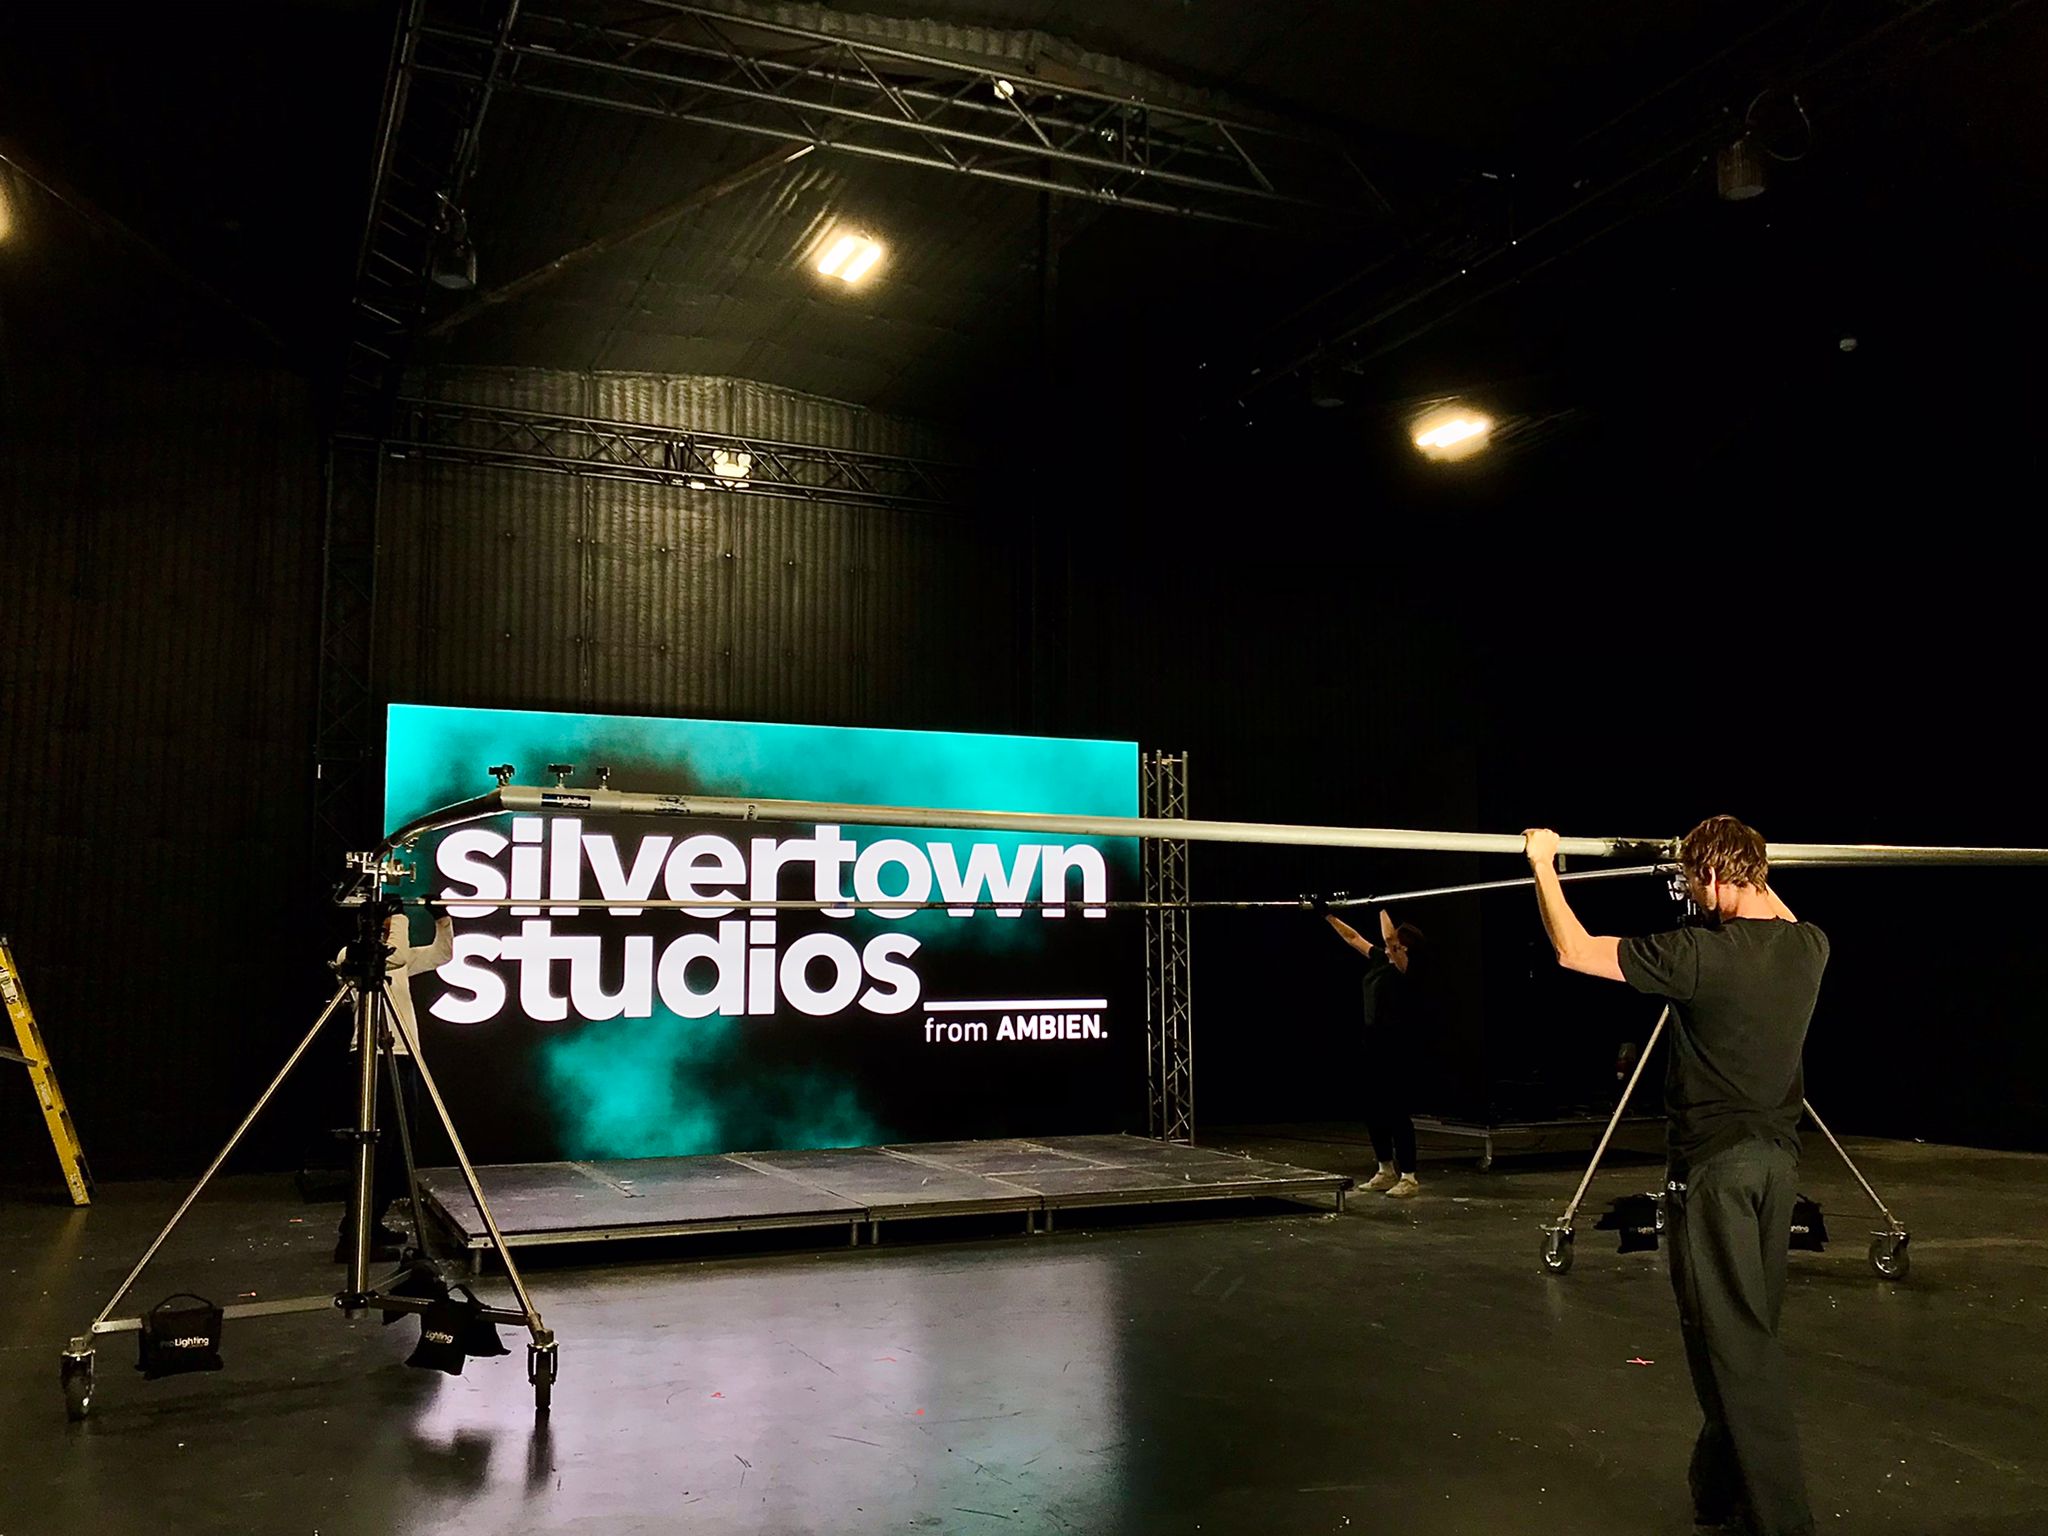 Silvertown Studio in London